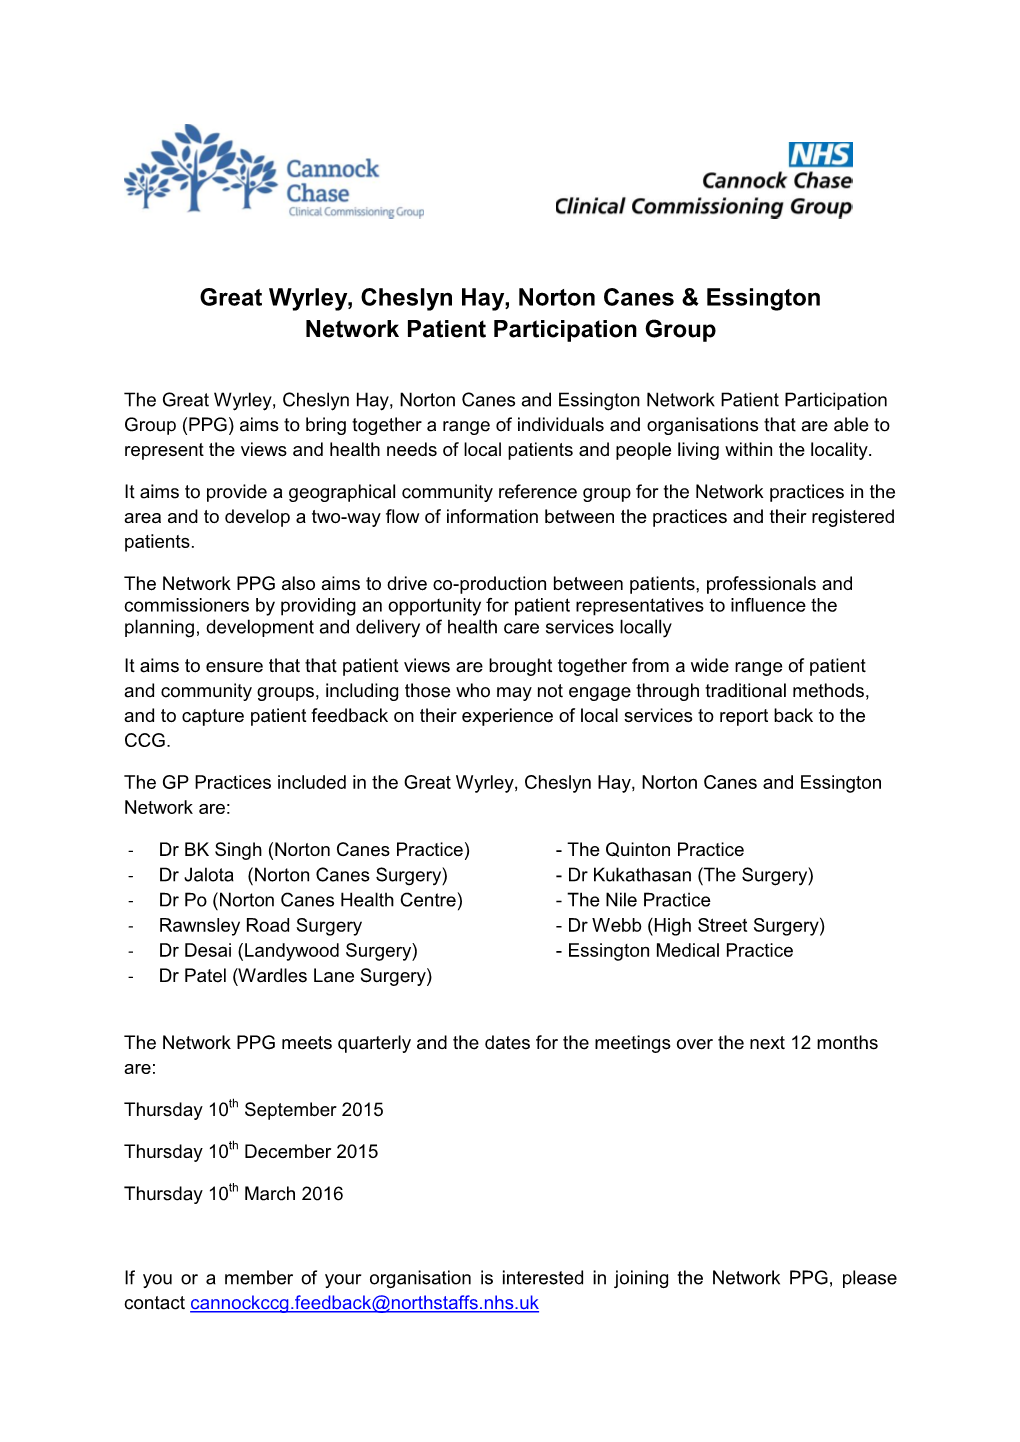 Great Wyrley, Cheslyn Hay, Norton Canes & Essington Network Patient